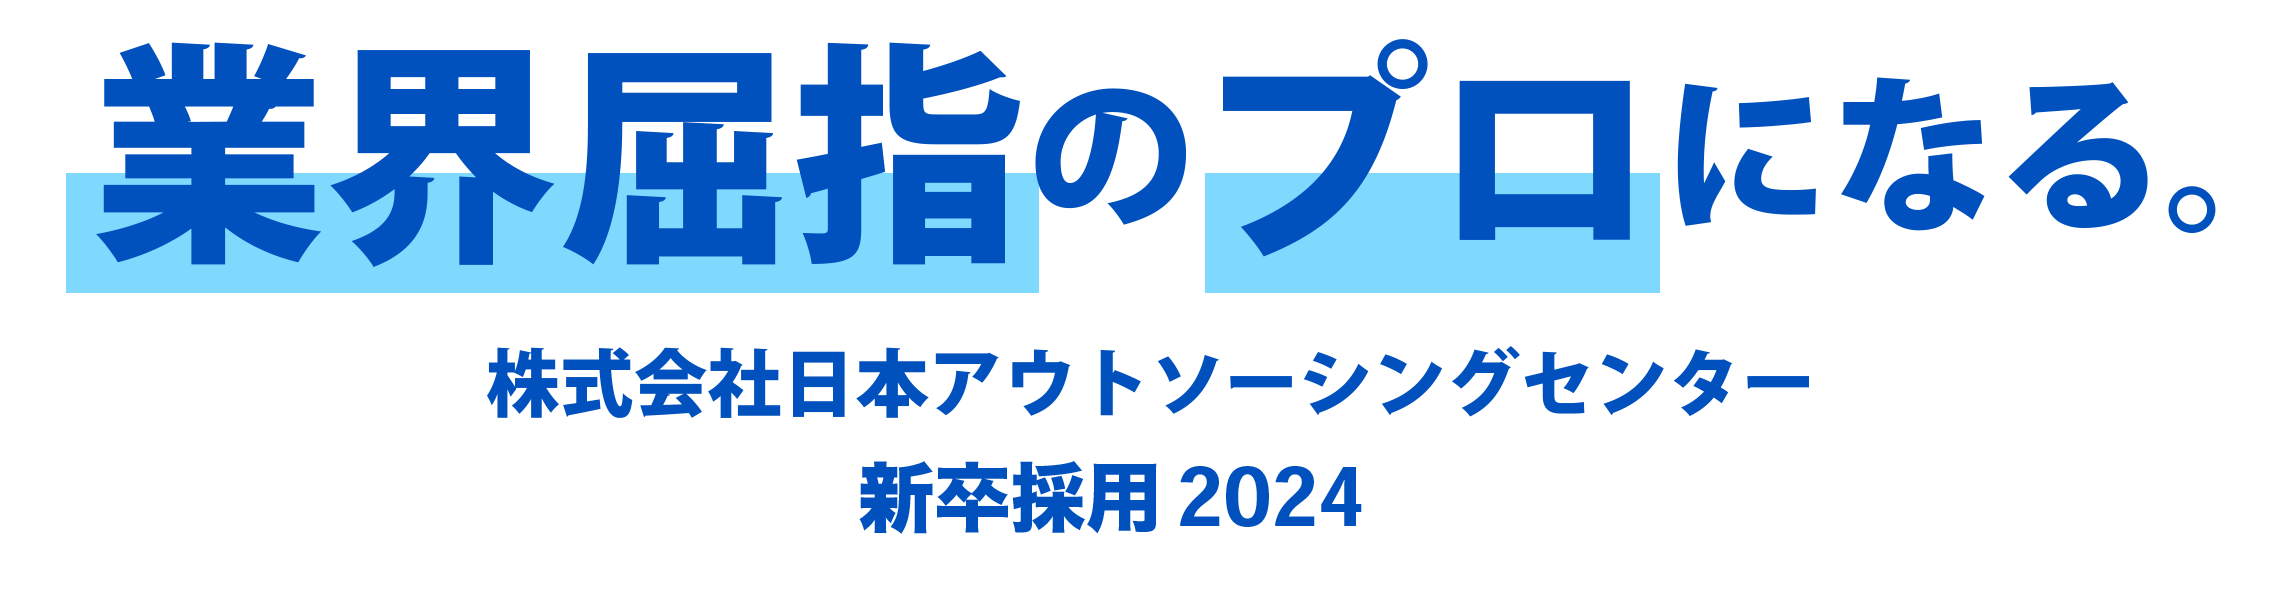 日本アウトソーシングセンター(JOC)新卒採用2022